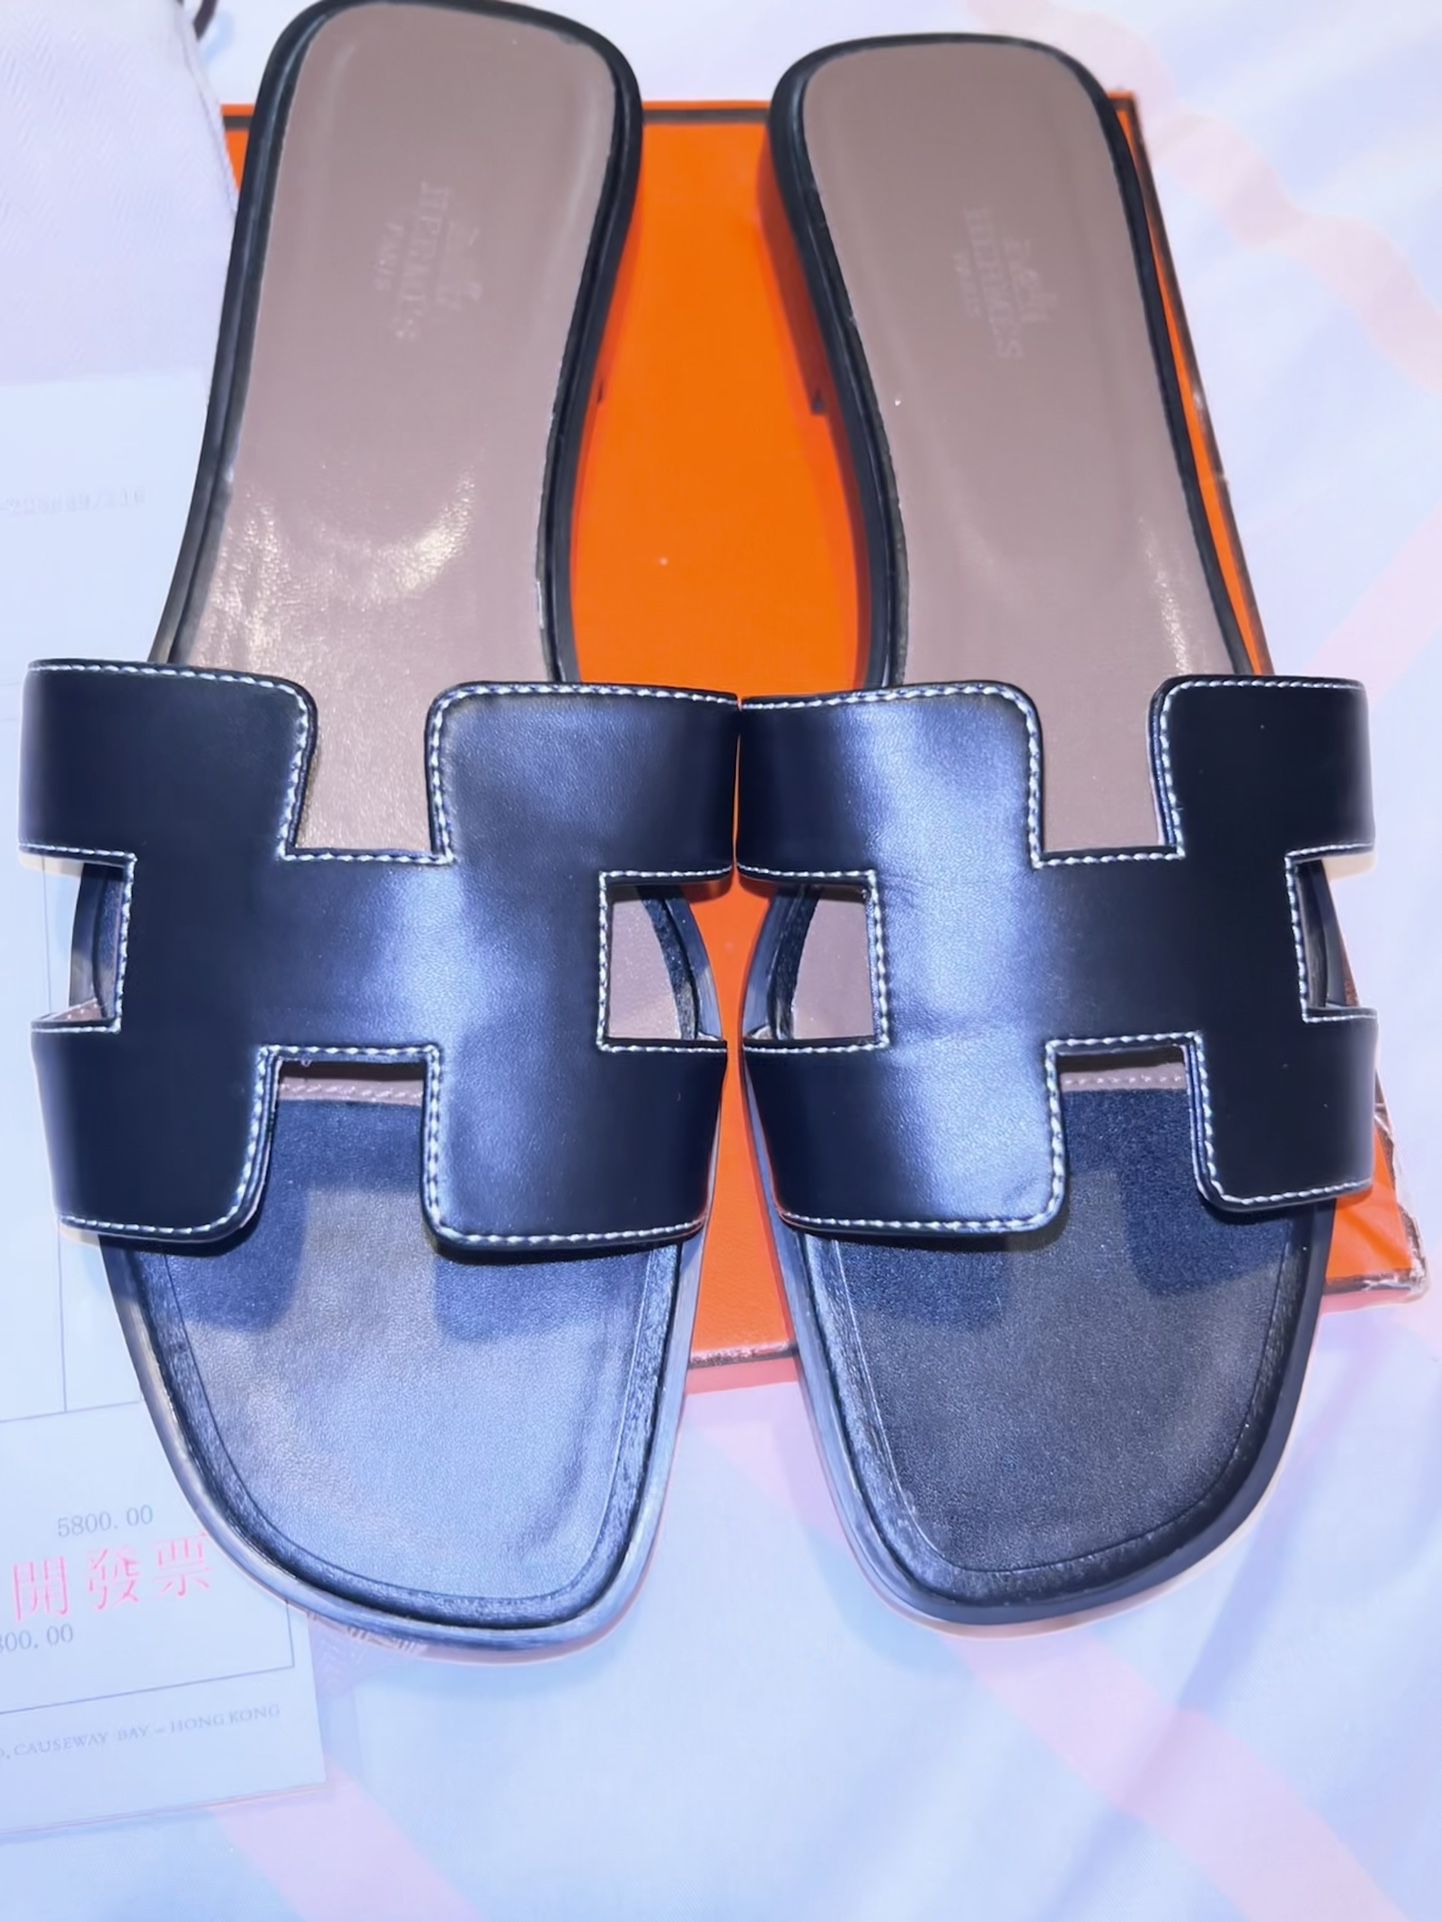 Hermès Oran Sandals W Dust Bag & Box